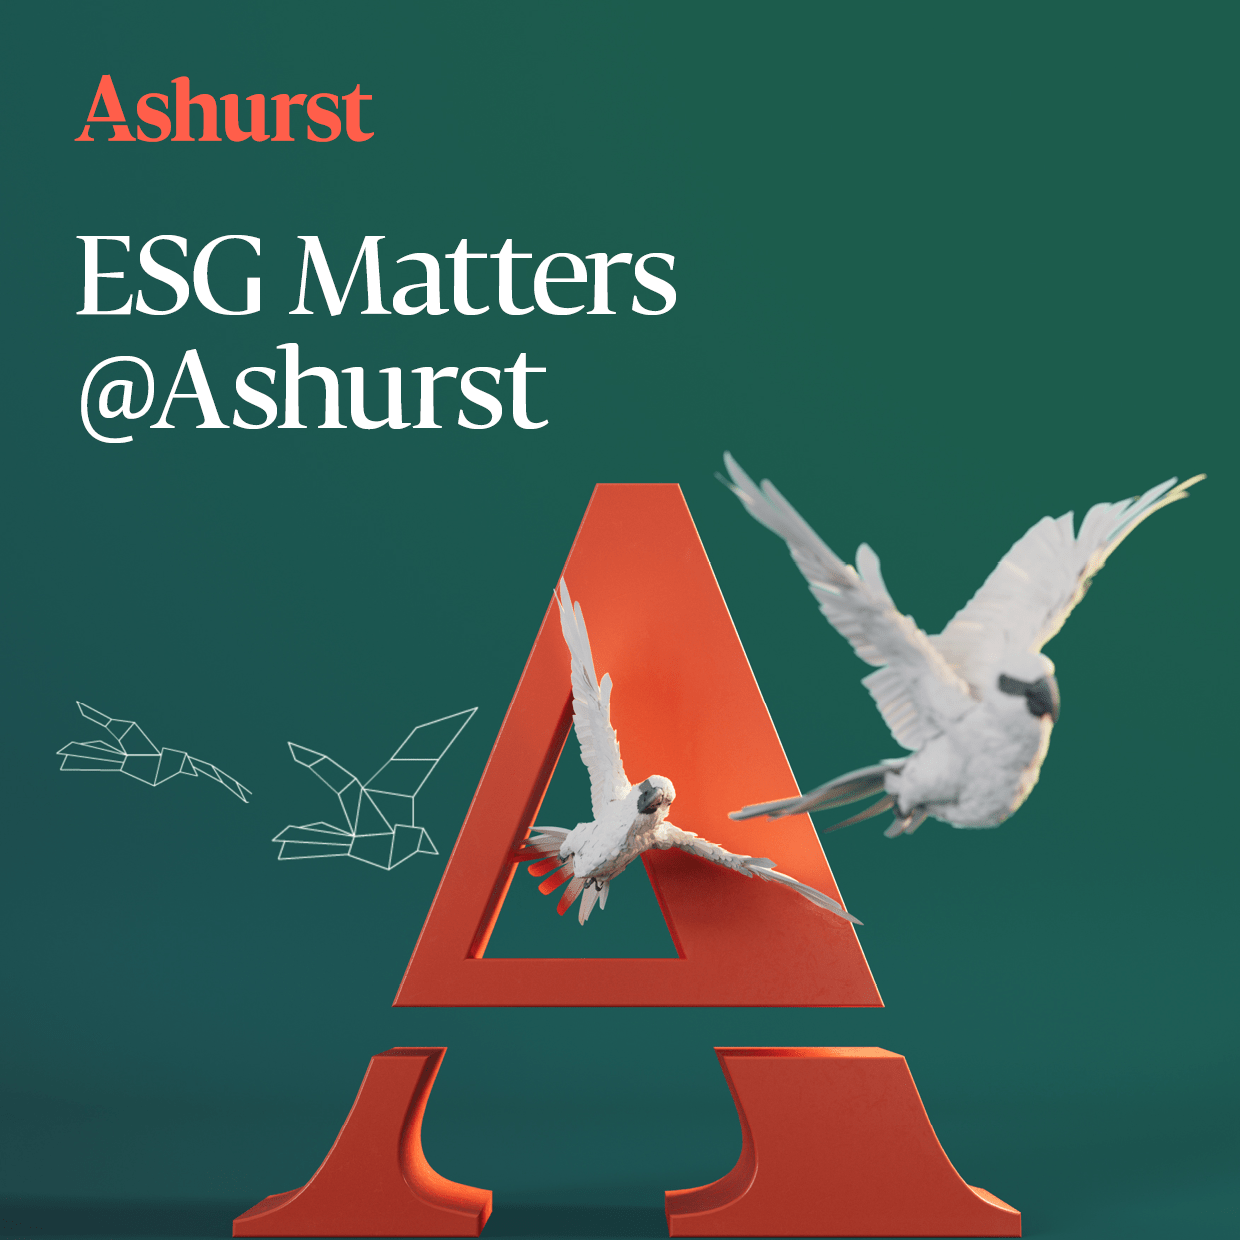 ESG Matters @ Ashurst